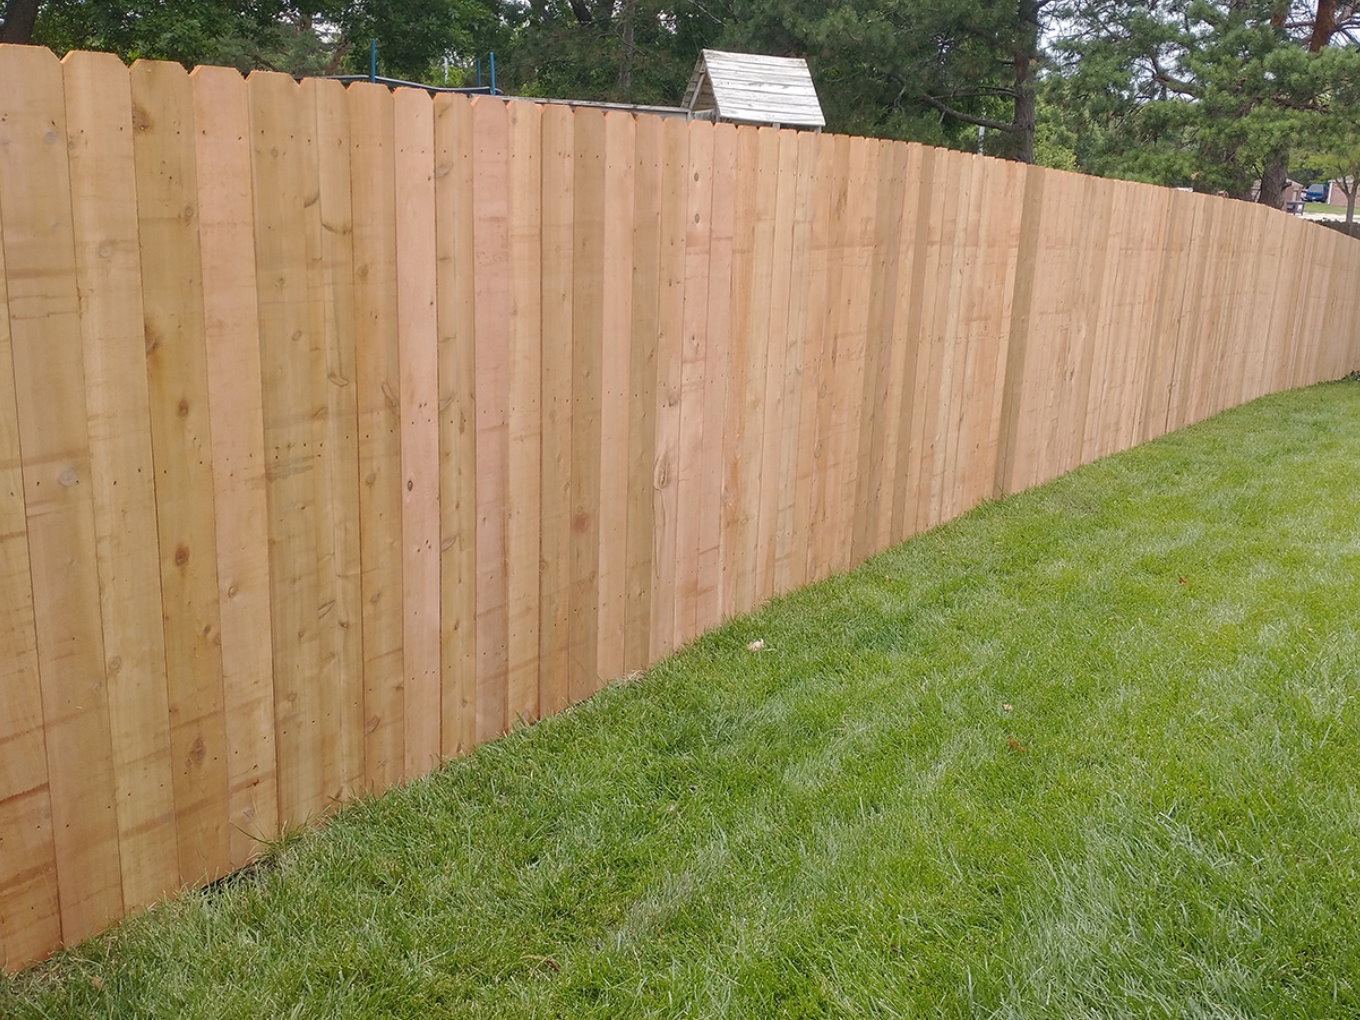 Fremont NE stockade style wood fence